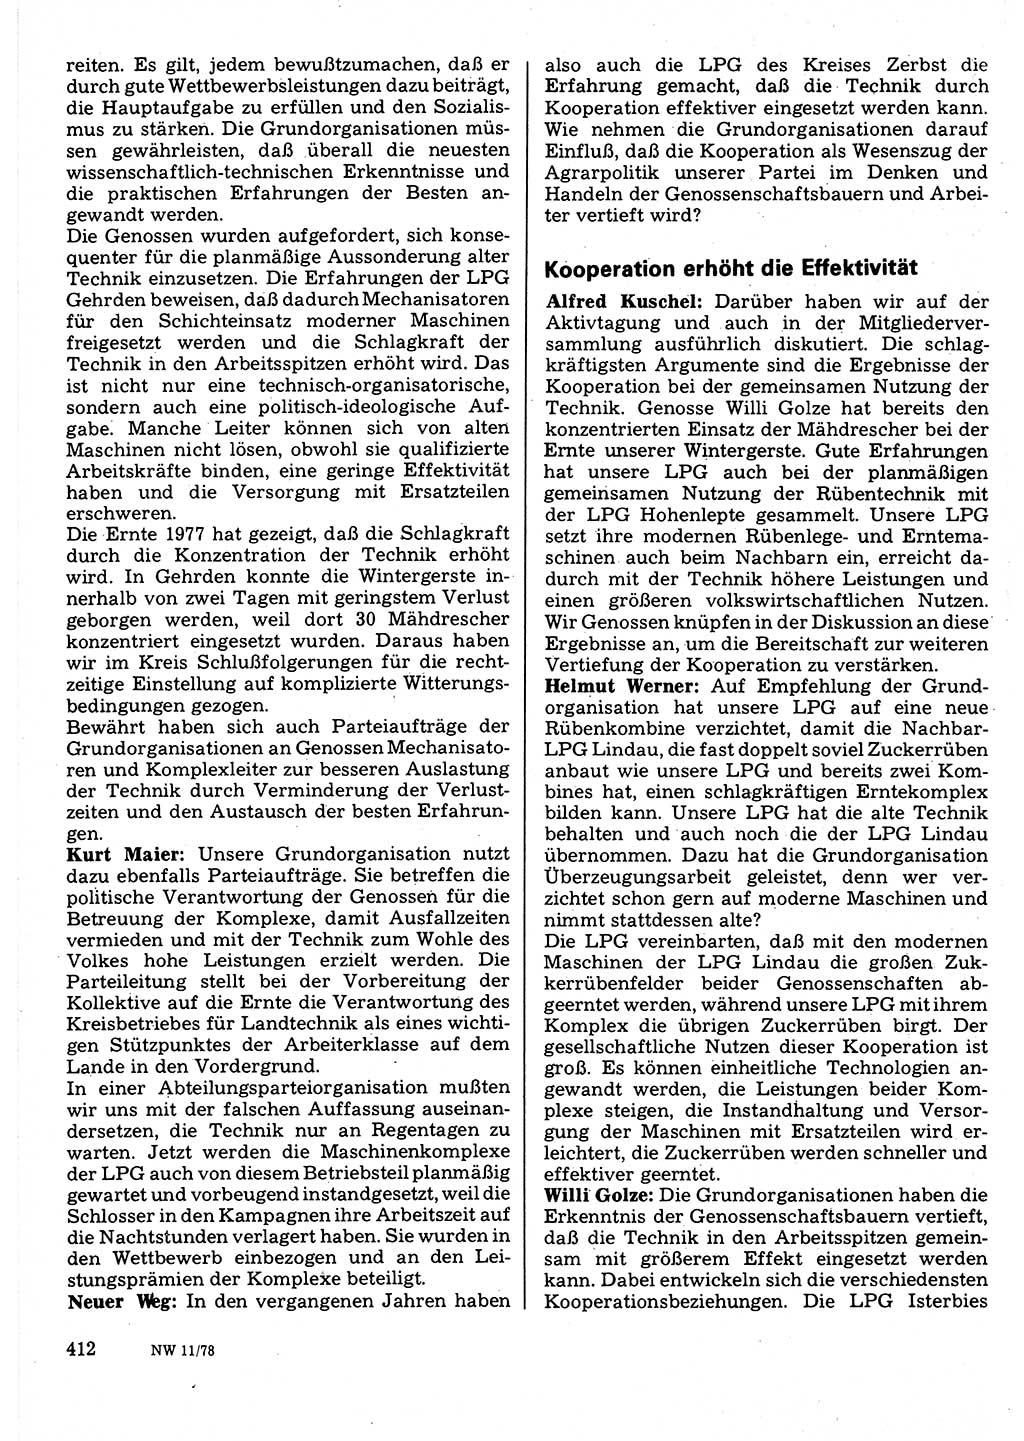 Neuer Weg (NW), Organ des Zentralkomitees (ZK) der SED (Sozialistische Einheitspartei Deutschlands) für Fragen des Parteilebens, 33. Jahrgang [Deutsche Demokratische Republik (DDR)] 1978, Seite 412 (NW ZK SED DDR 1978, S. 412)